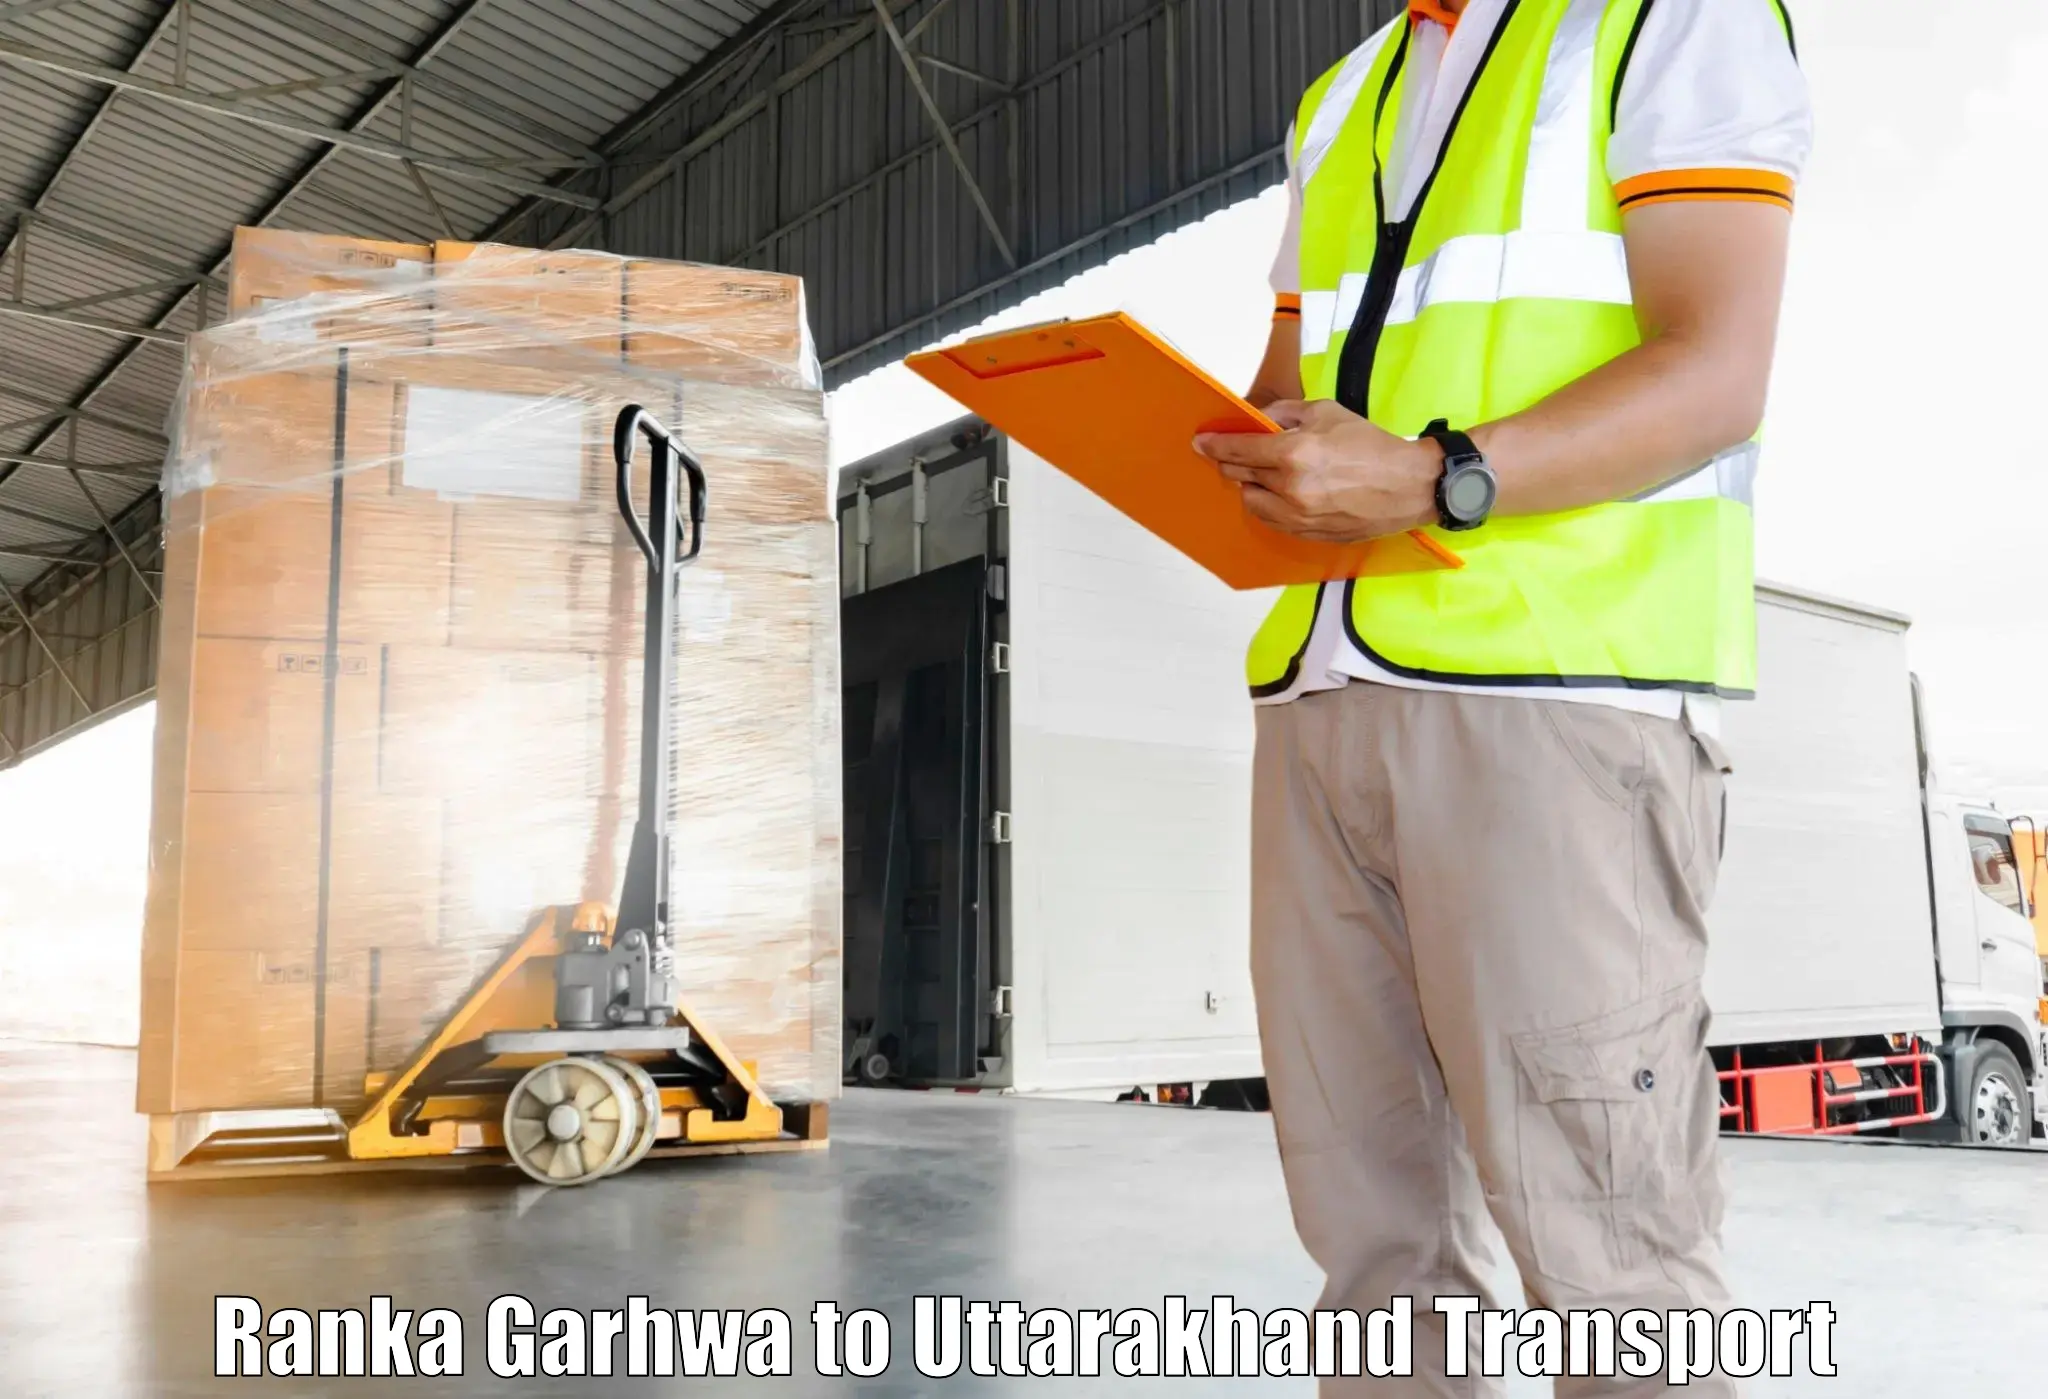 Shipping partner Ranka Garhwa to Lansdowne